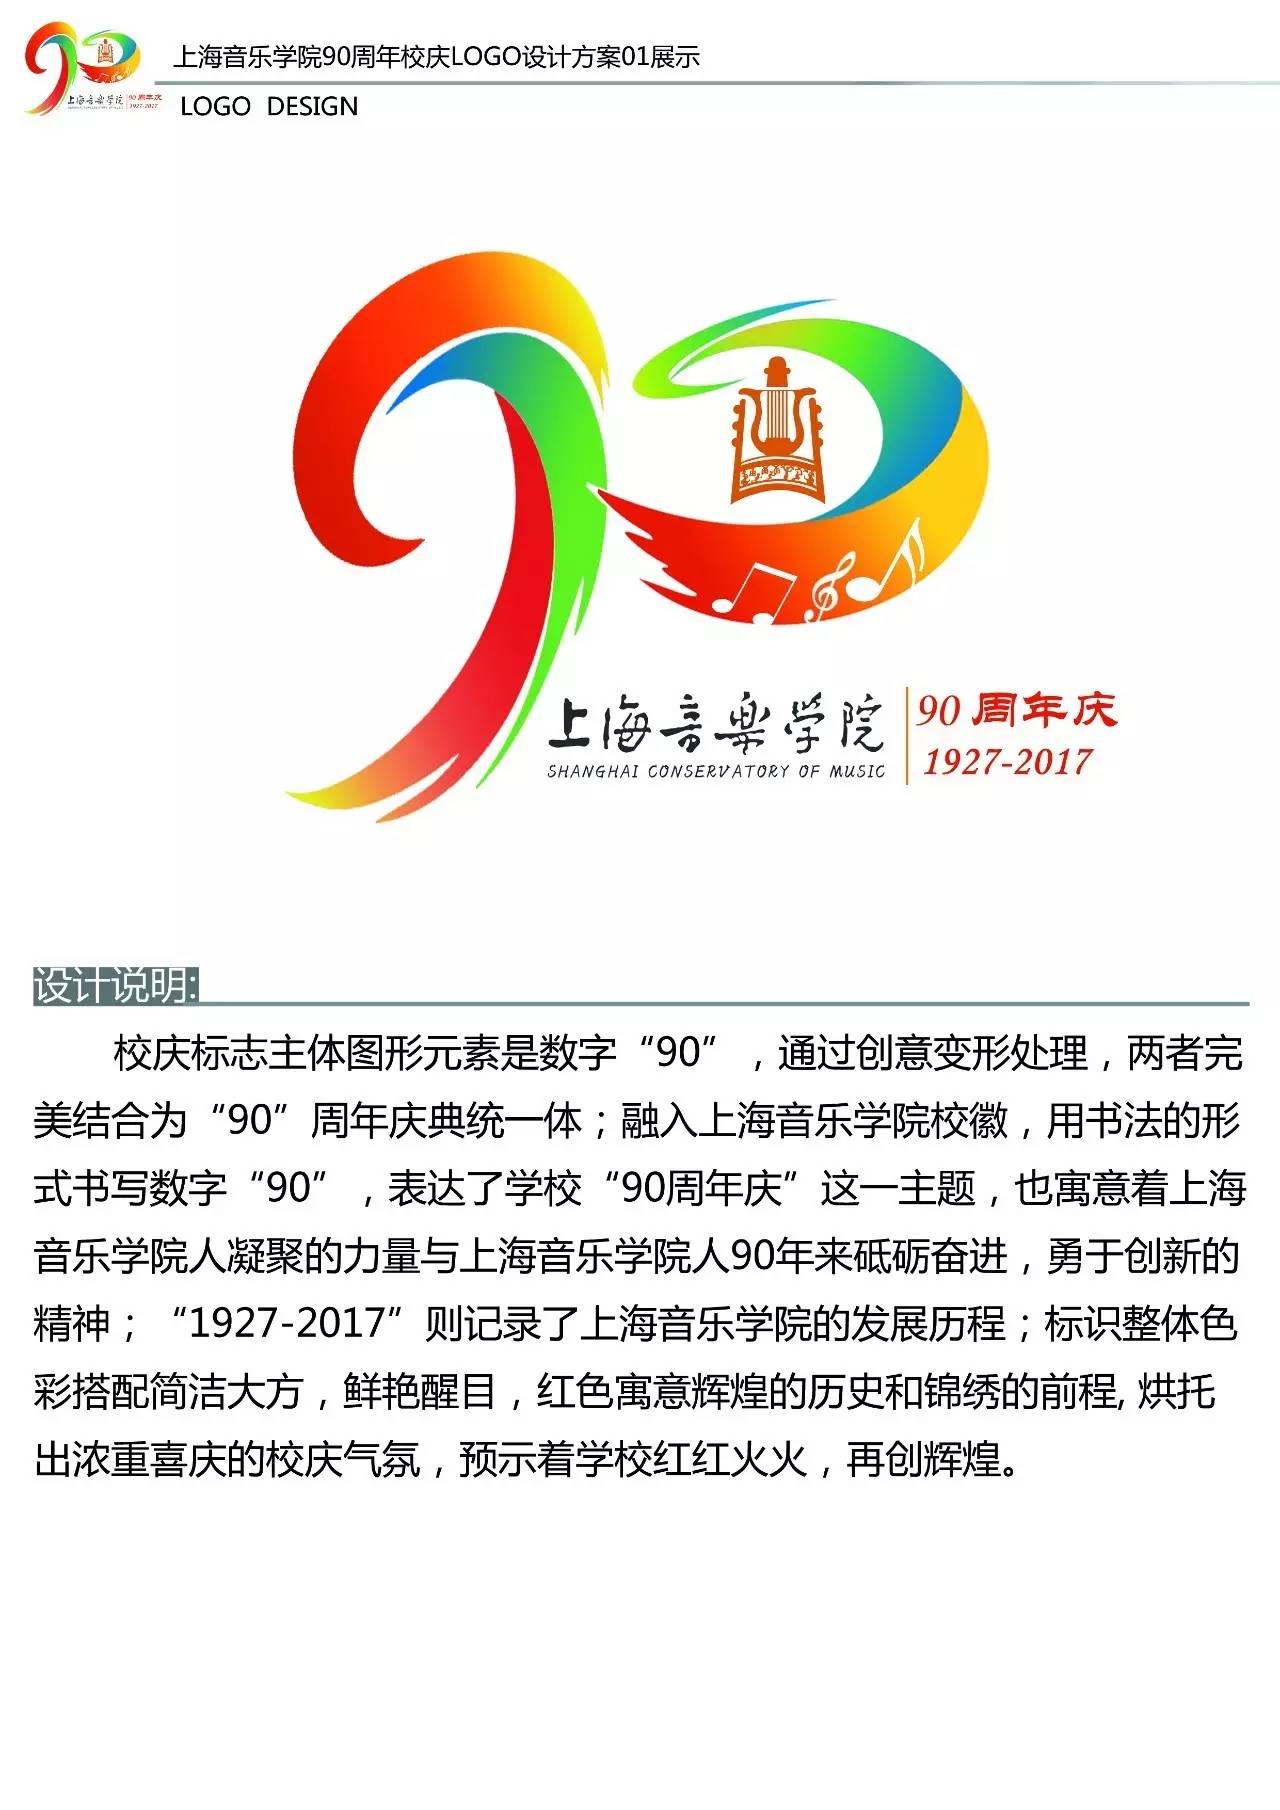 _上海对外经贸大学纪念品商店_上海对外经贸校徽